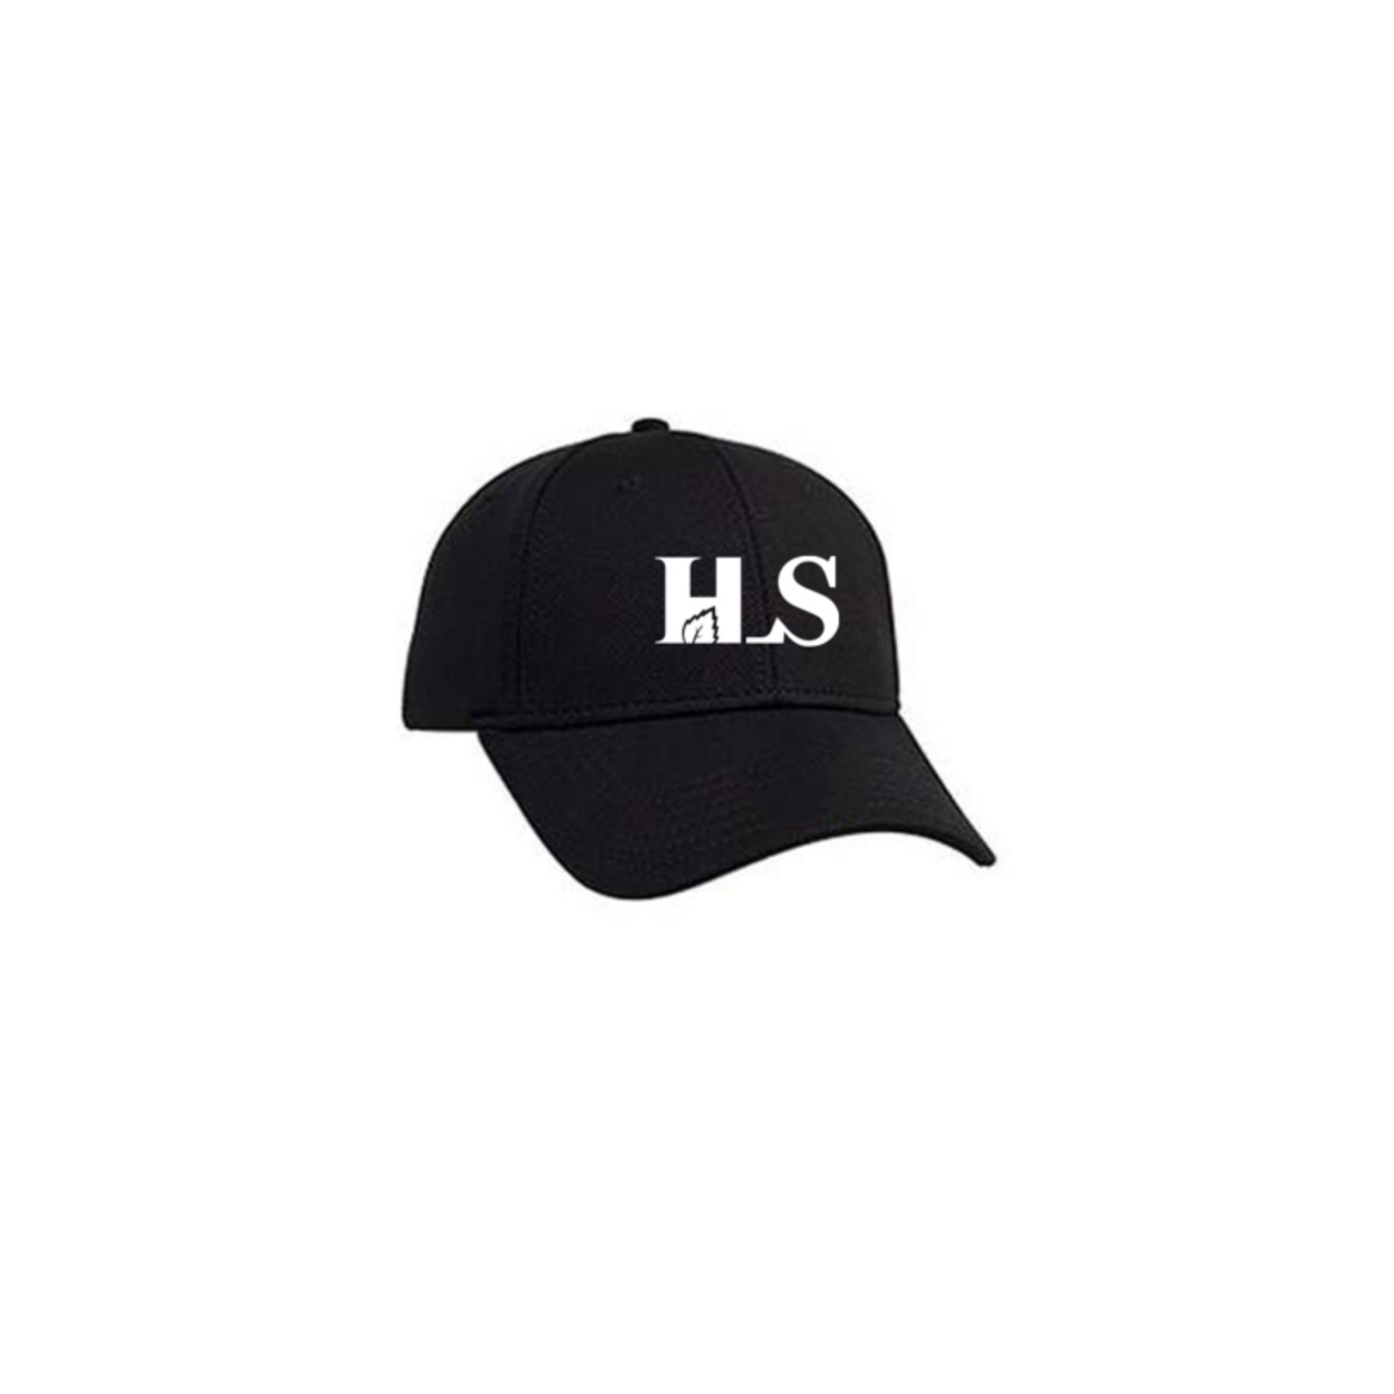 HLS Baseball Cap - 19-1051